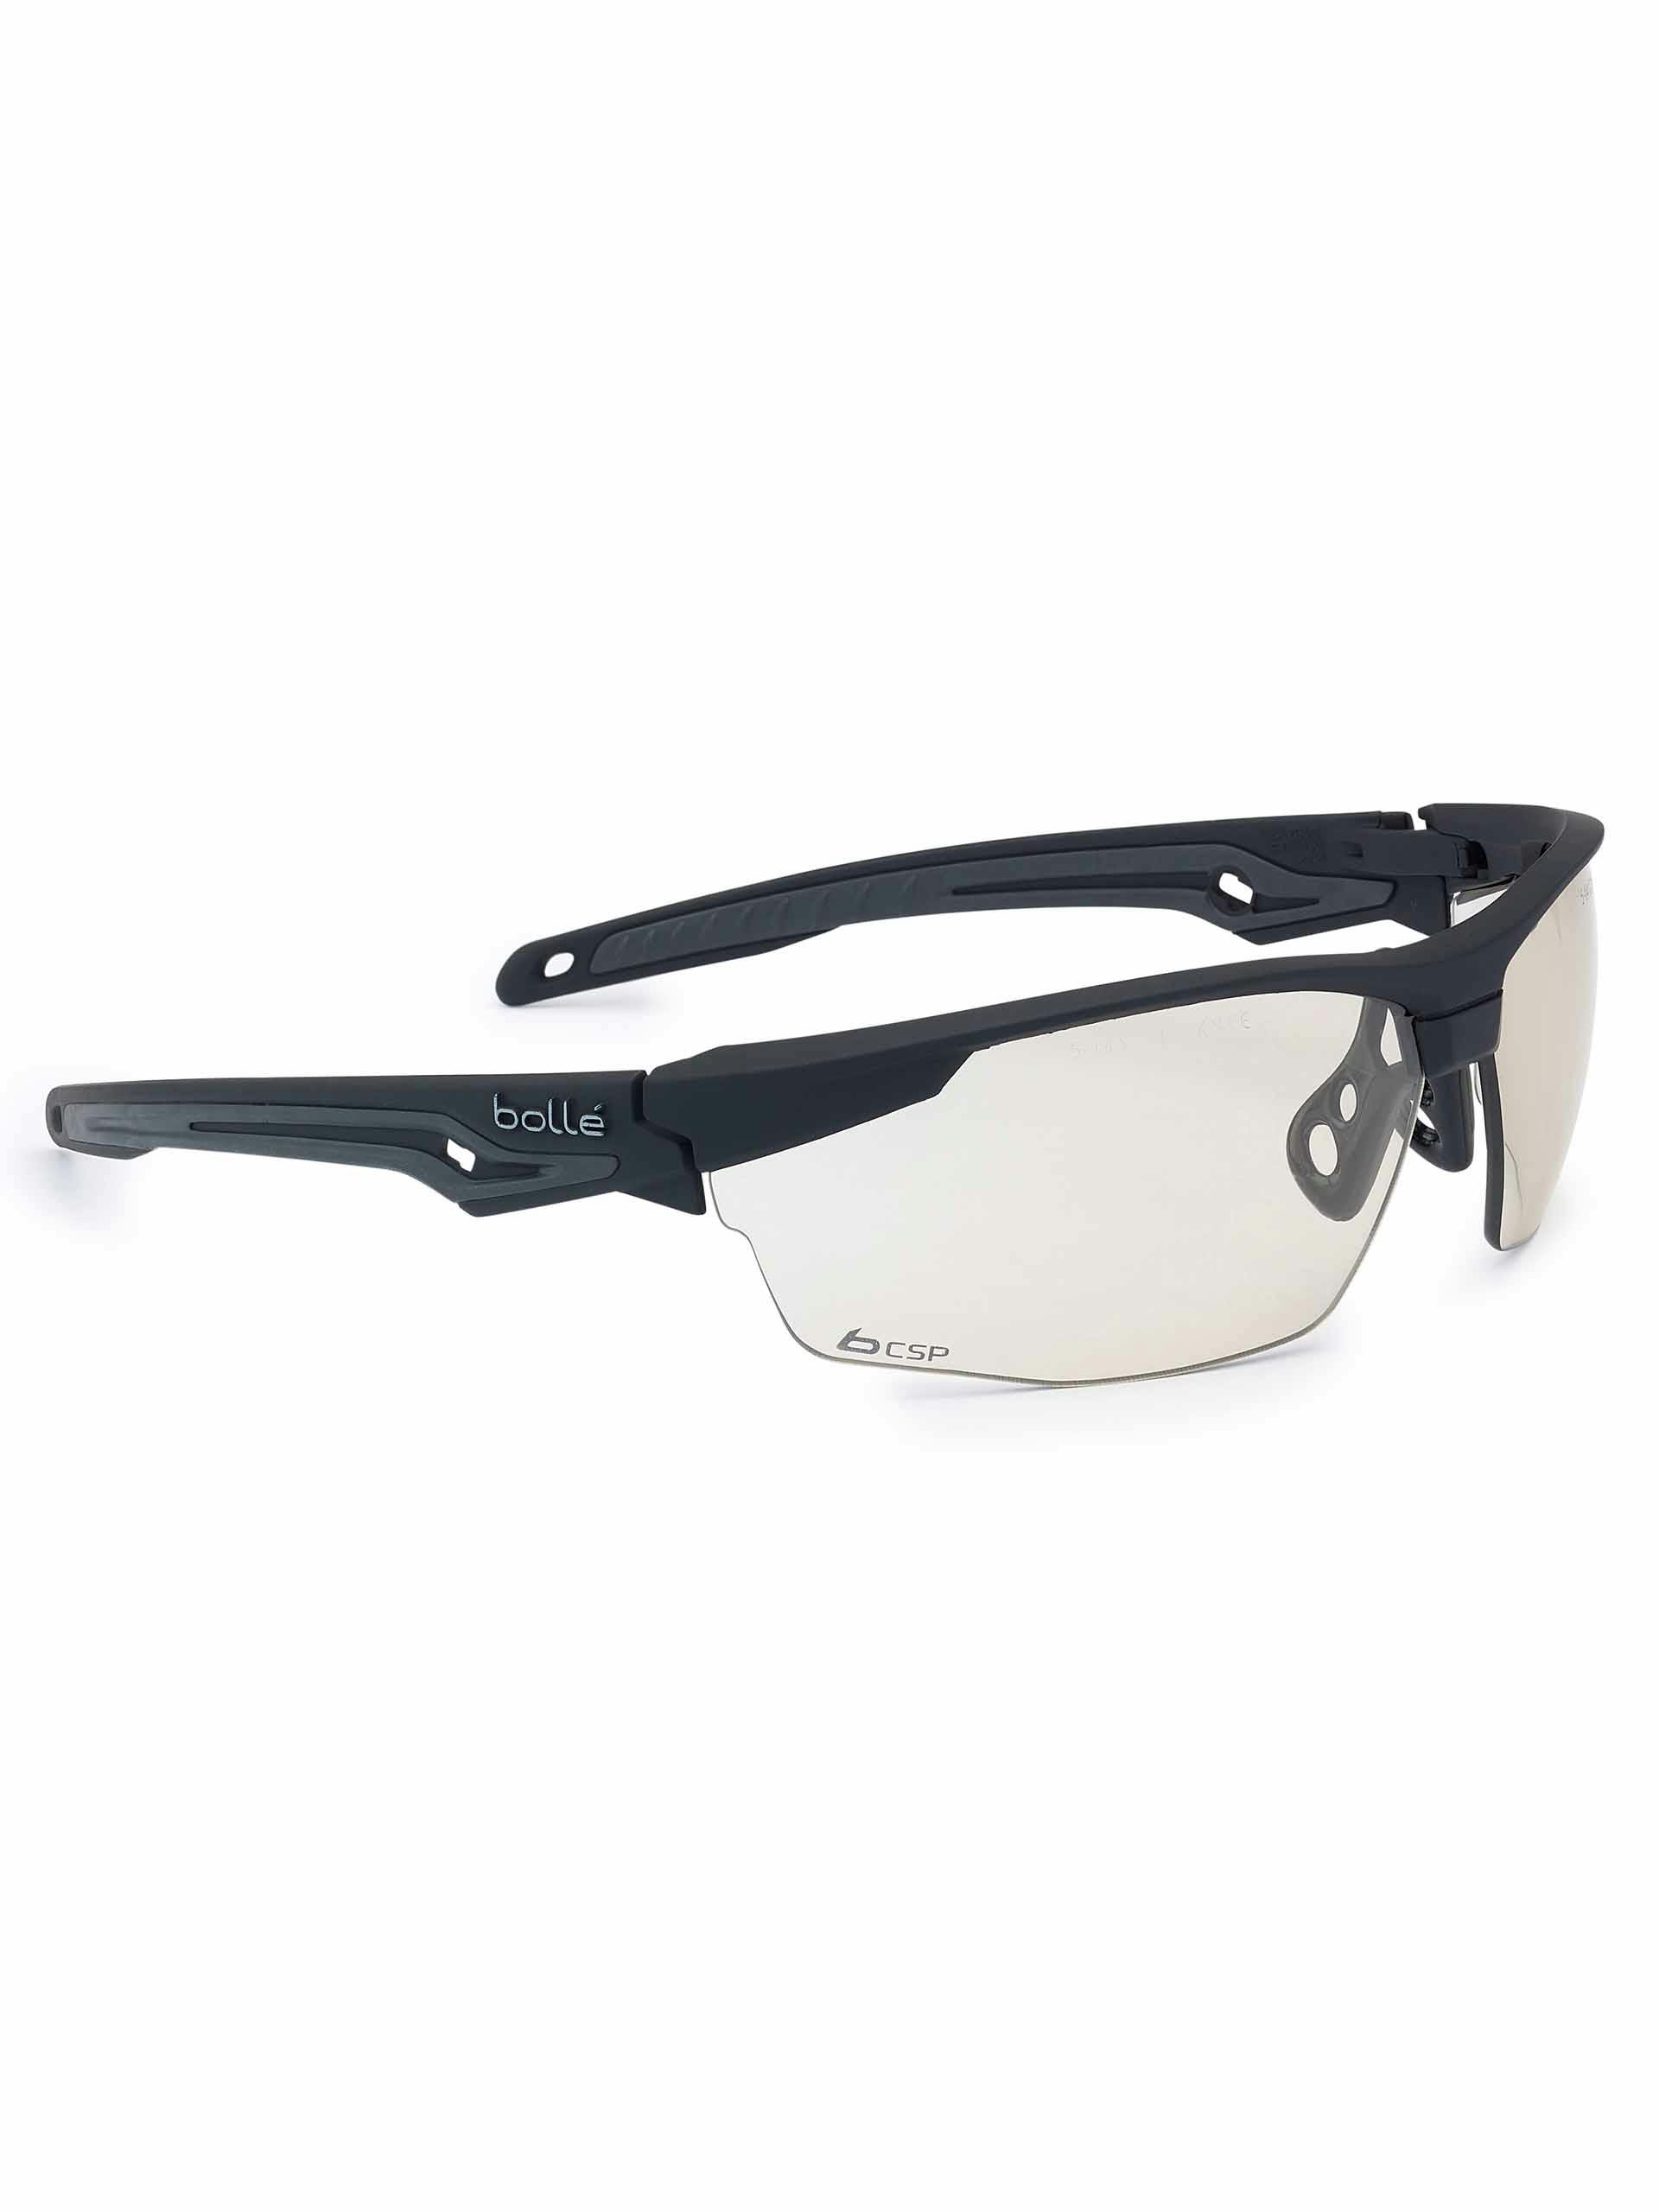 Bollé Tryon Safety Glasses - Polarized